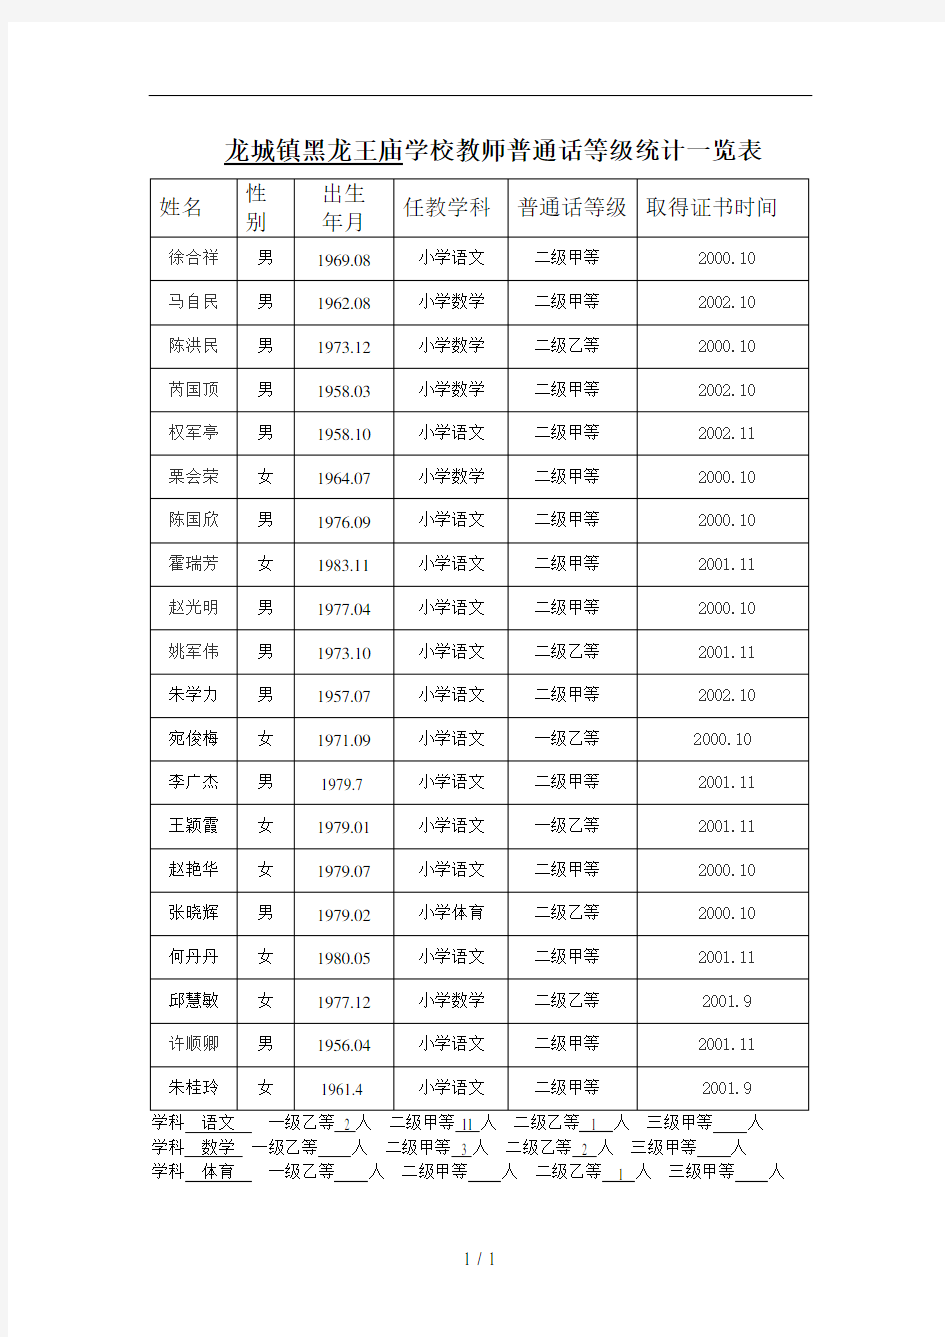 学校教师普通话等级统计一览表